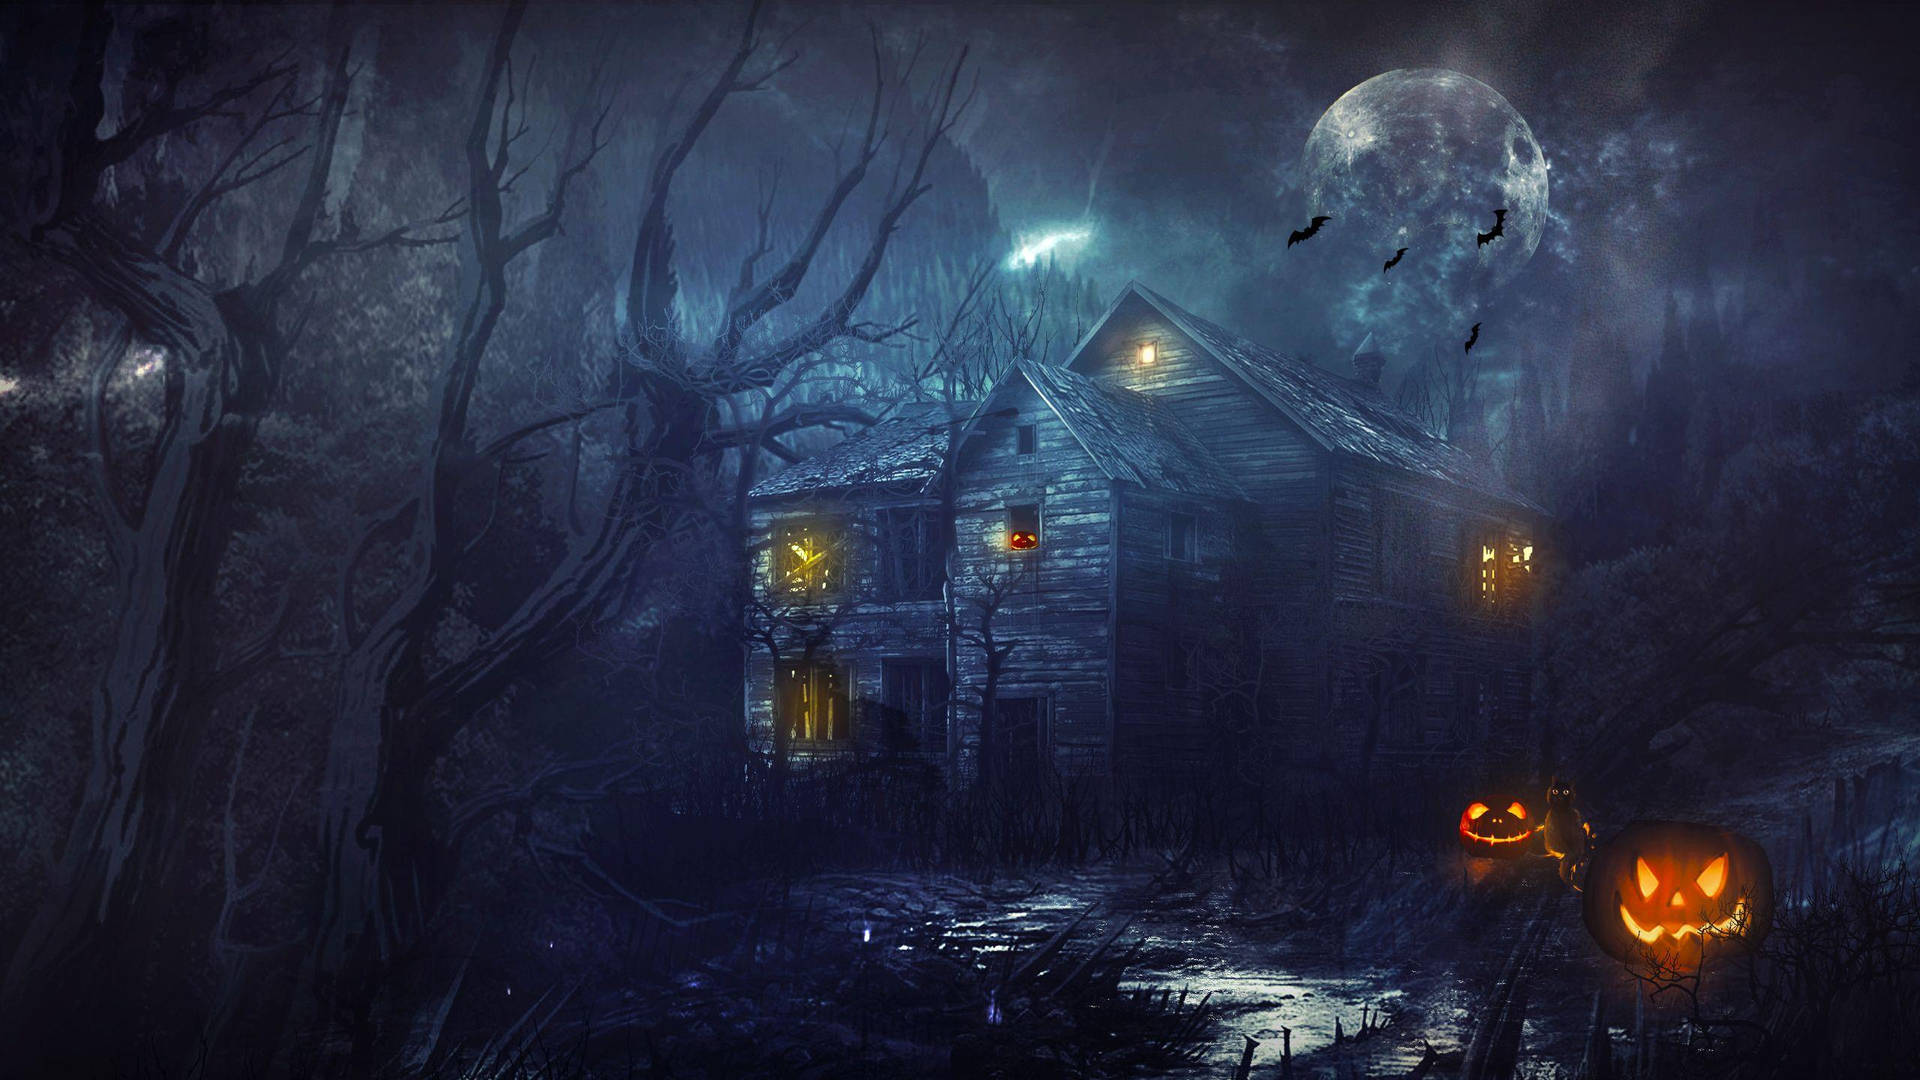 Förbereddig För Att Bli Skrämd Denna Halloween På Det Hemsökta Huset. Wallpaper